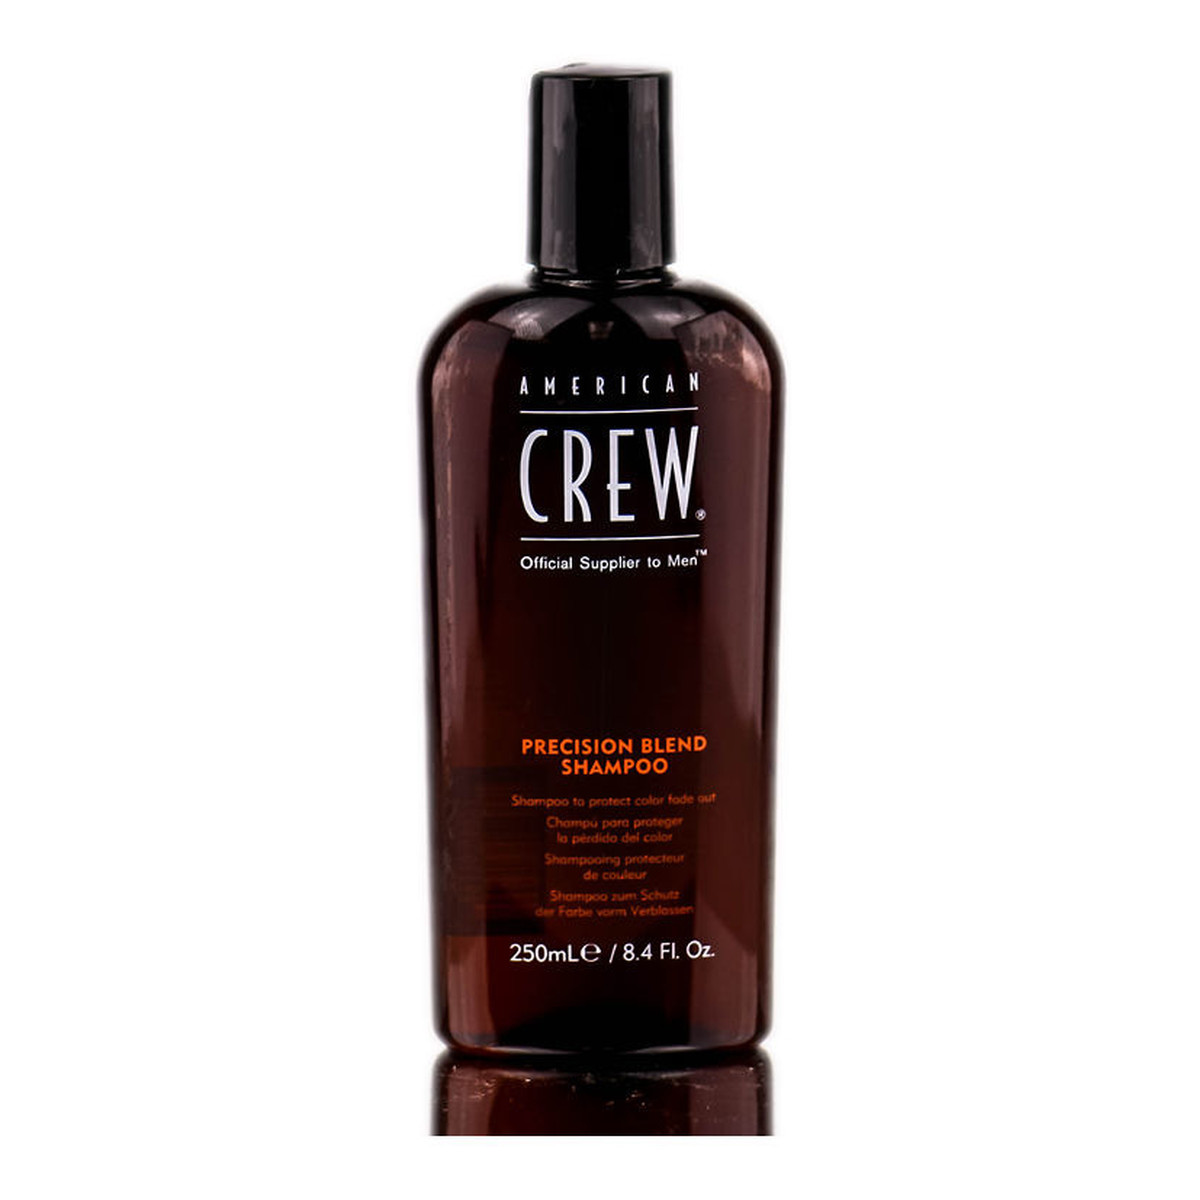 American Crew Precision Blend Shampoo Szampon do włosów siwych 250ml